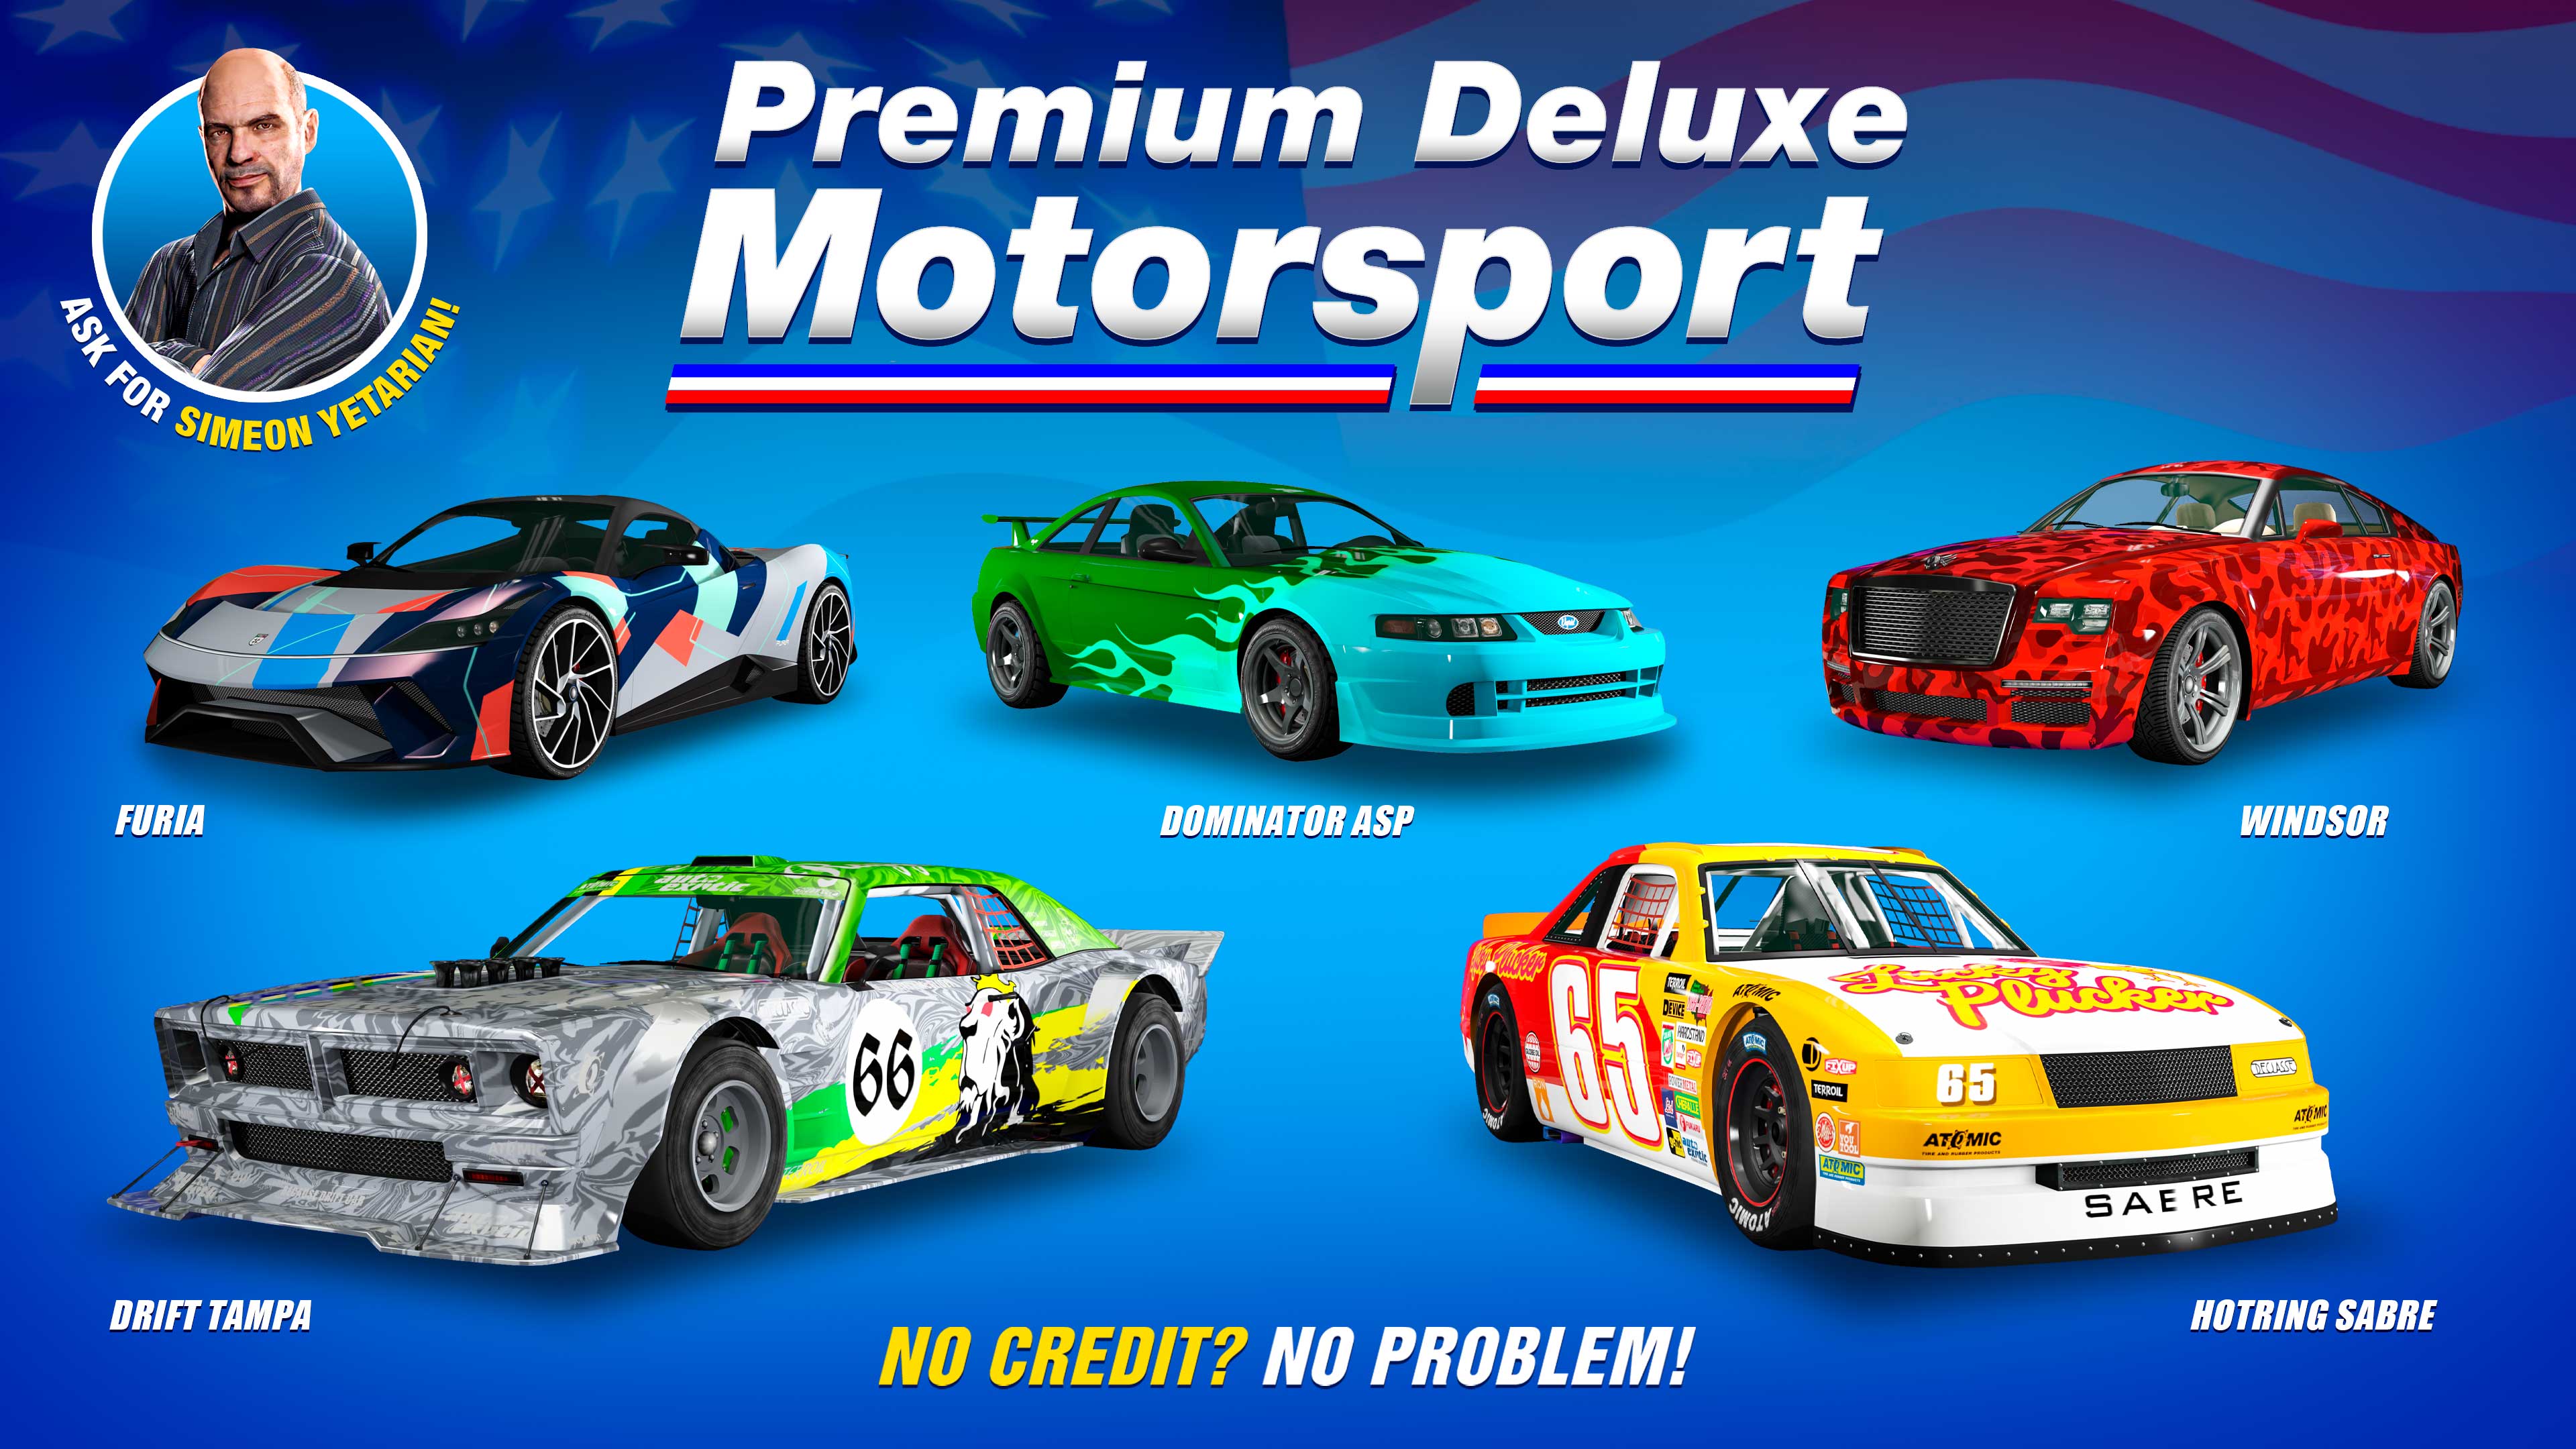 pôster da Premium Deluxe Motorsport